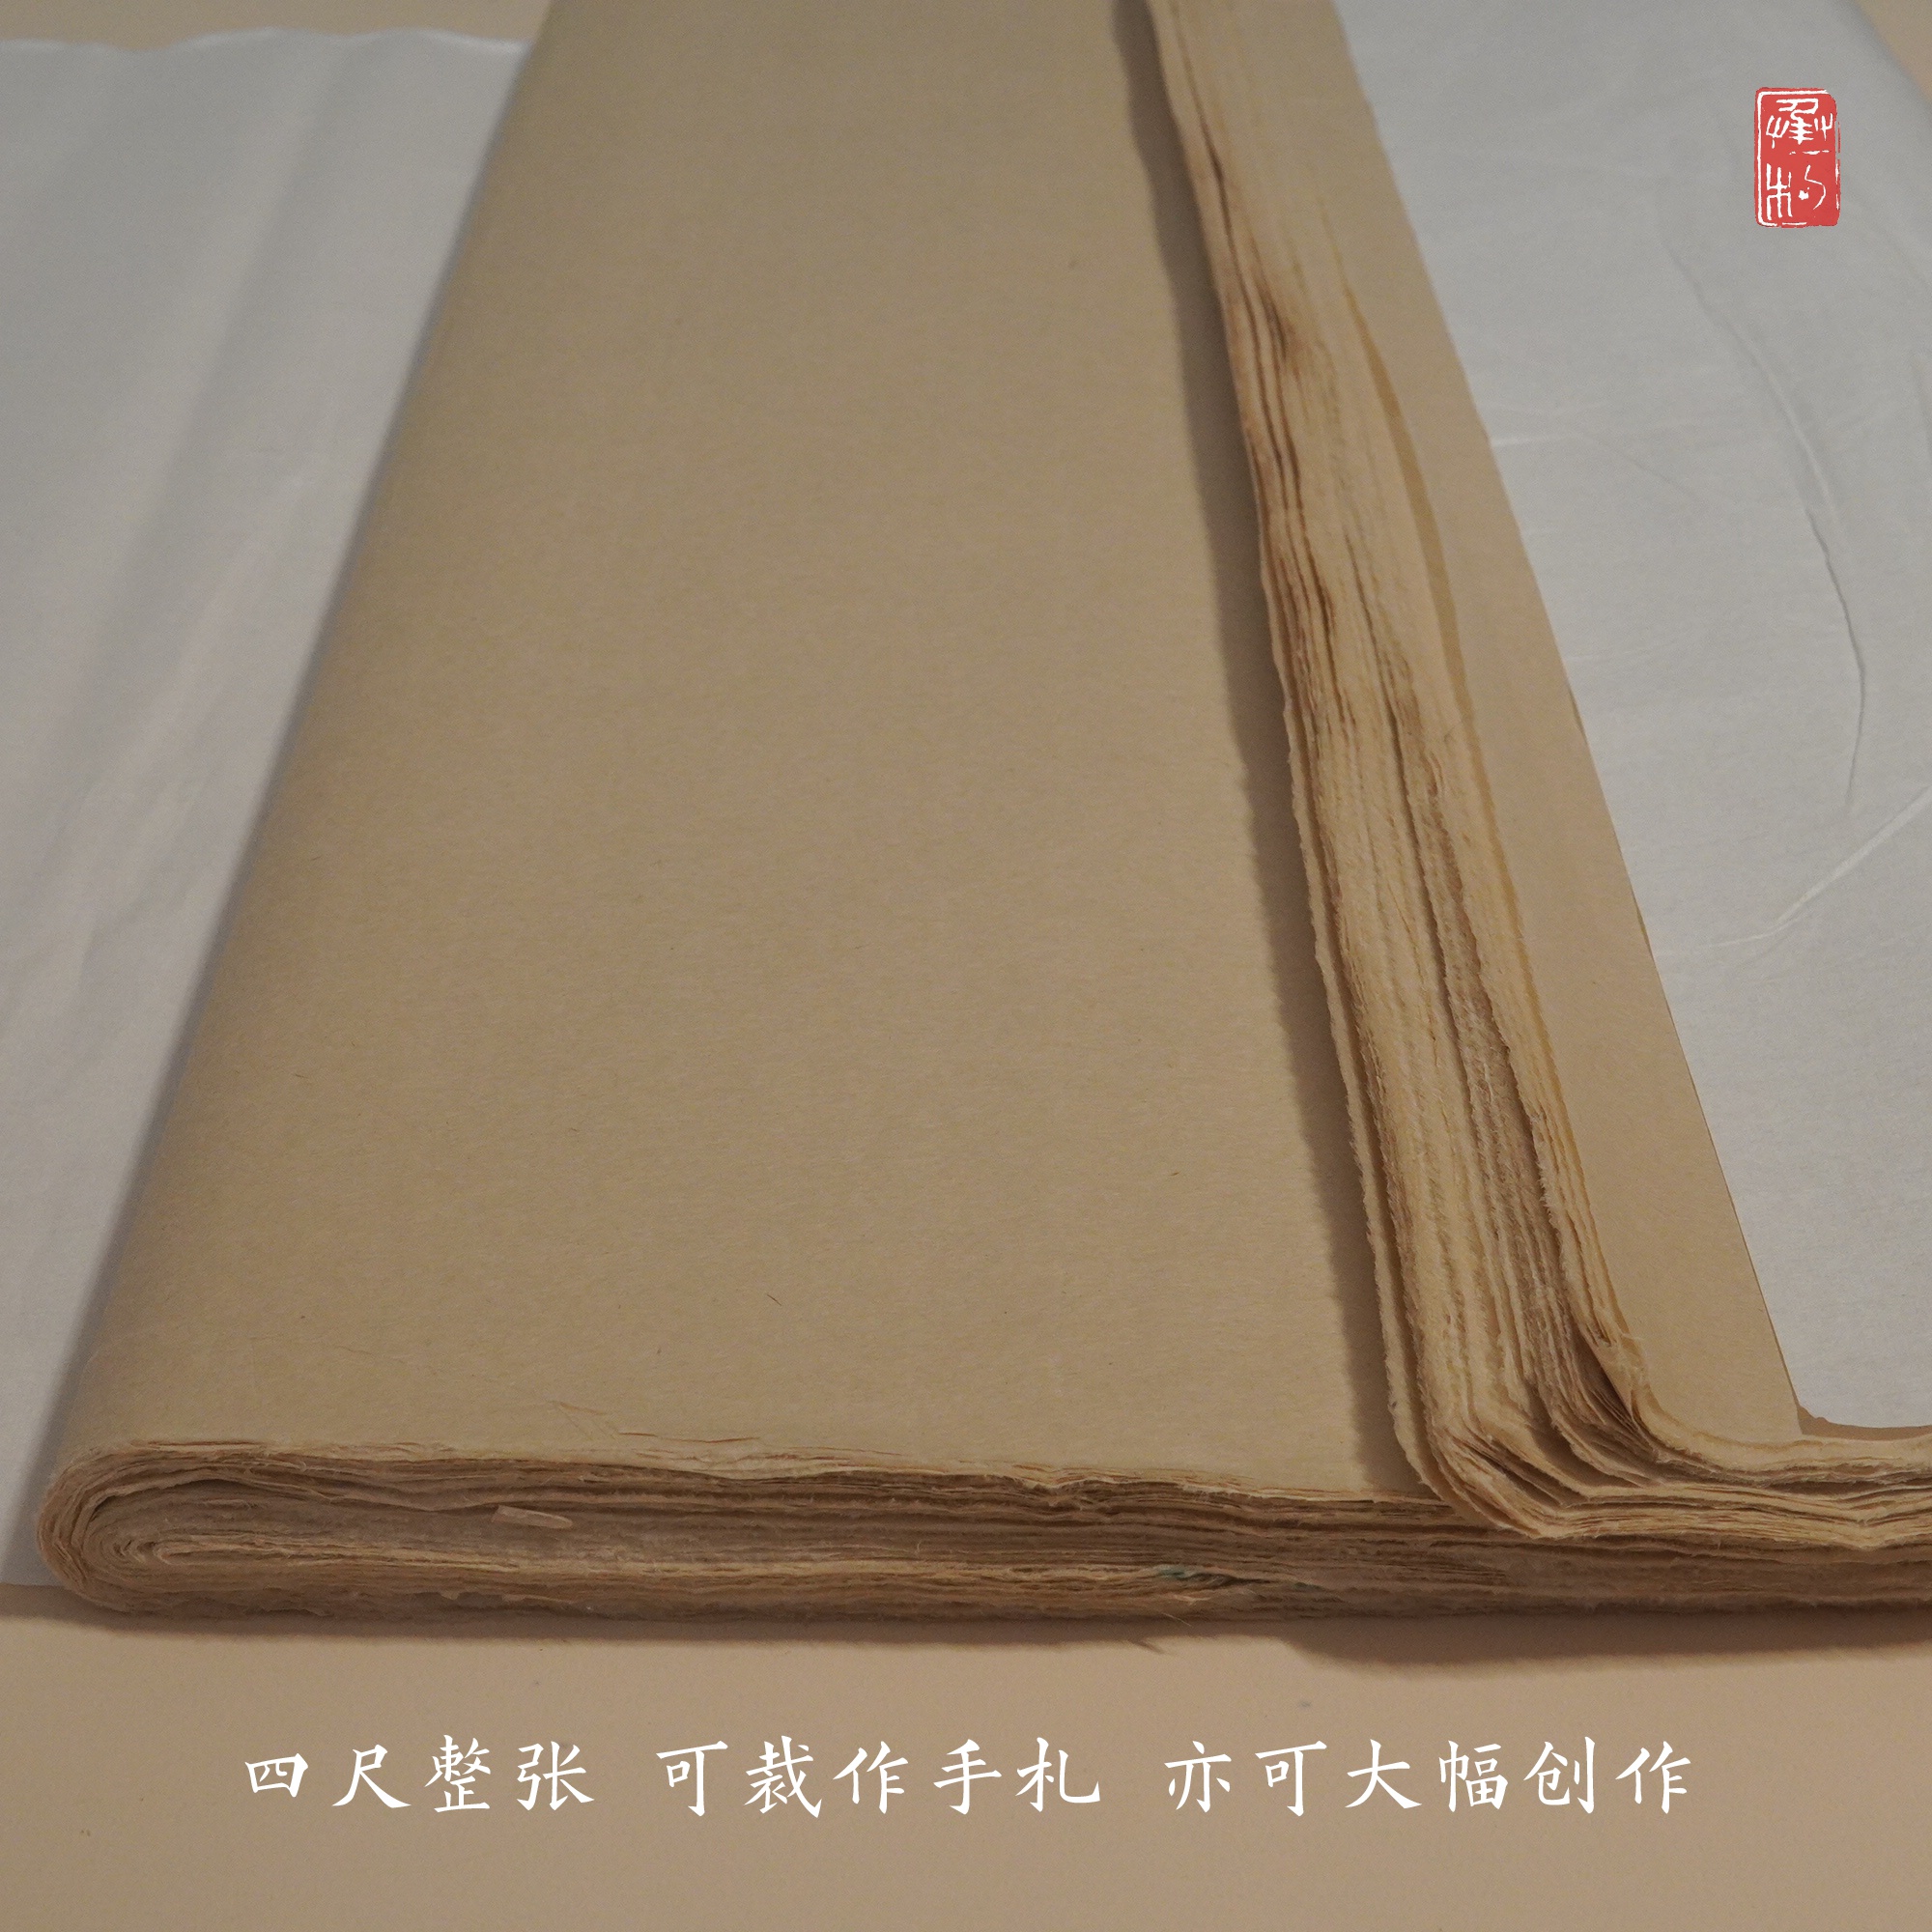 冷壁蝉翼毛边竹纸 天然竹浆 纯手工古法制作 临摹创作皆宜半生熟